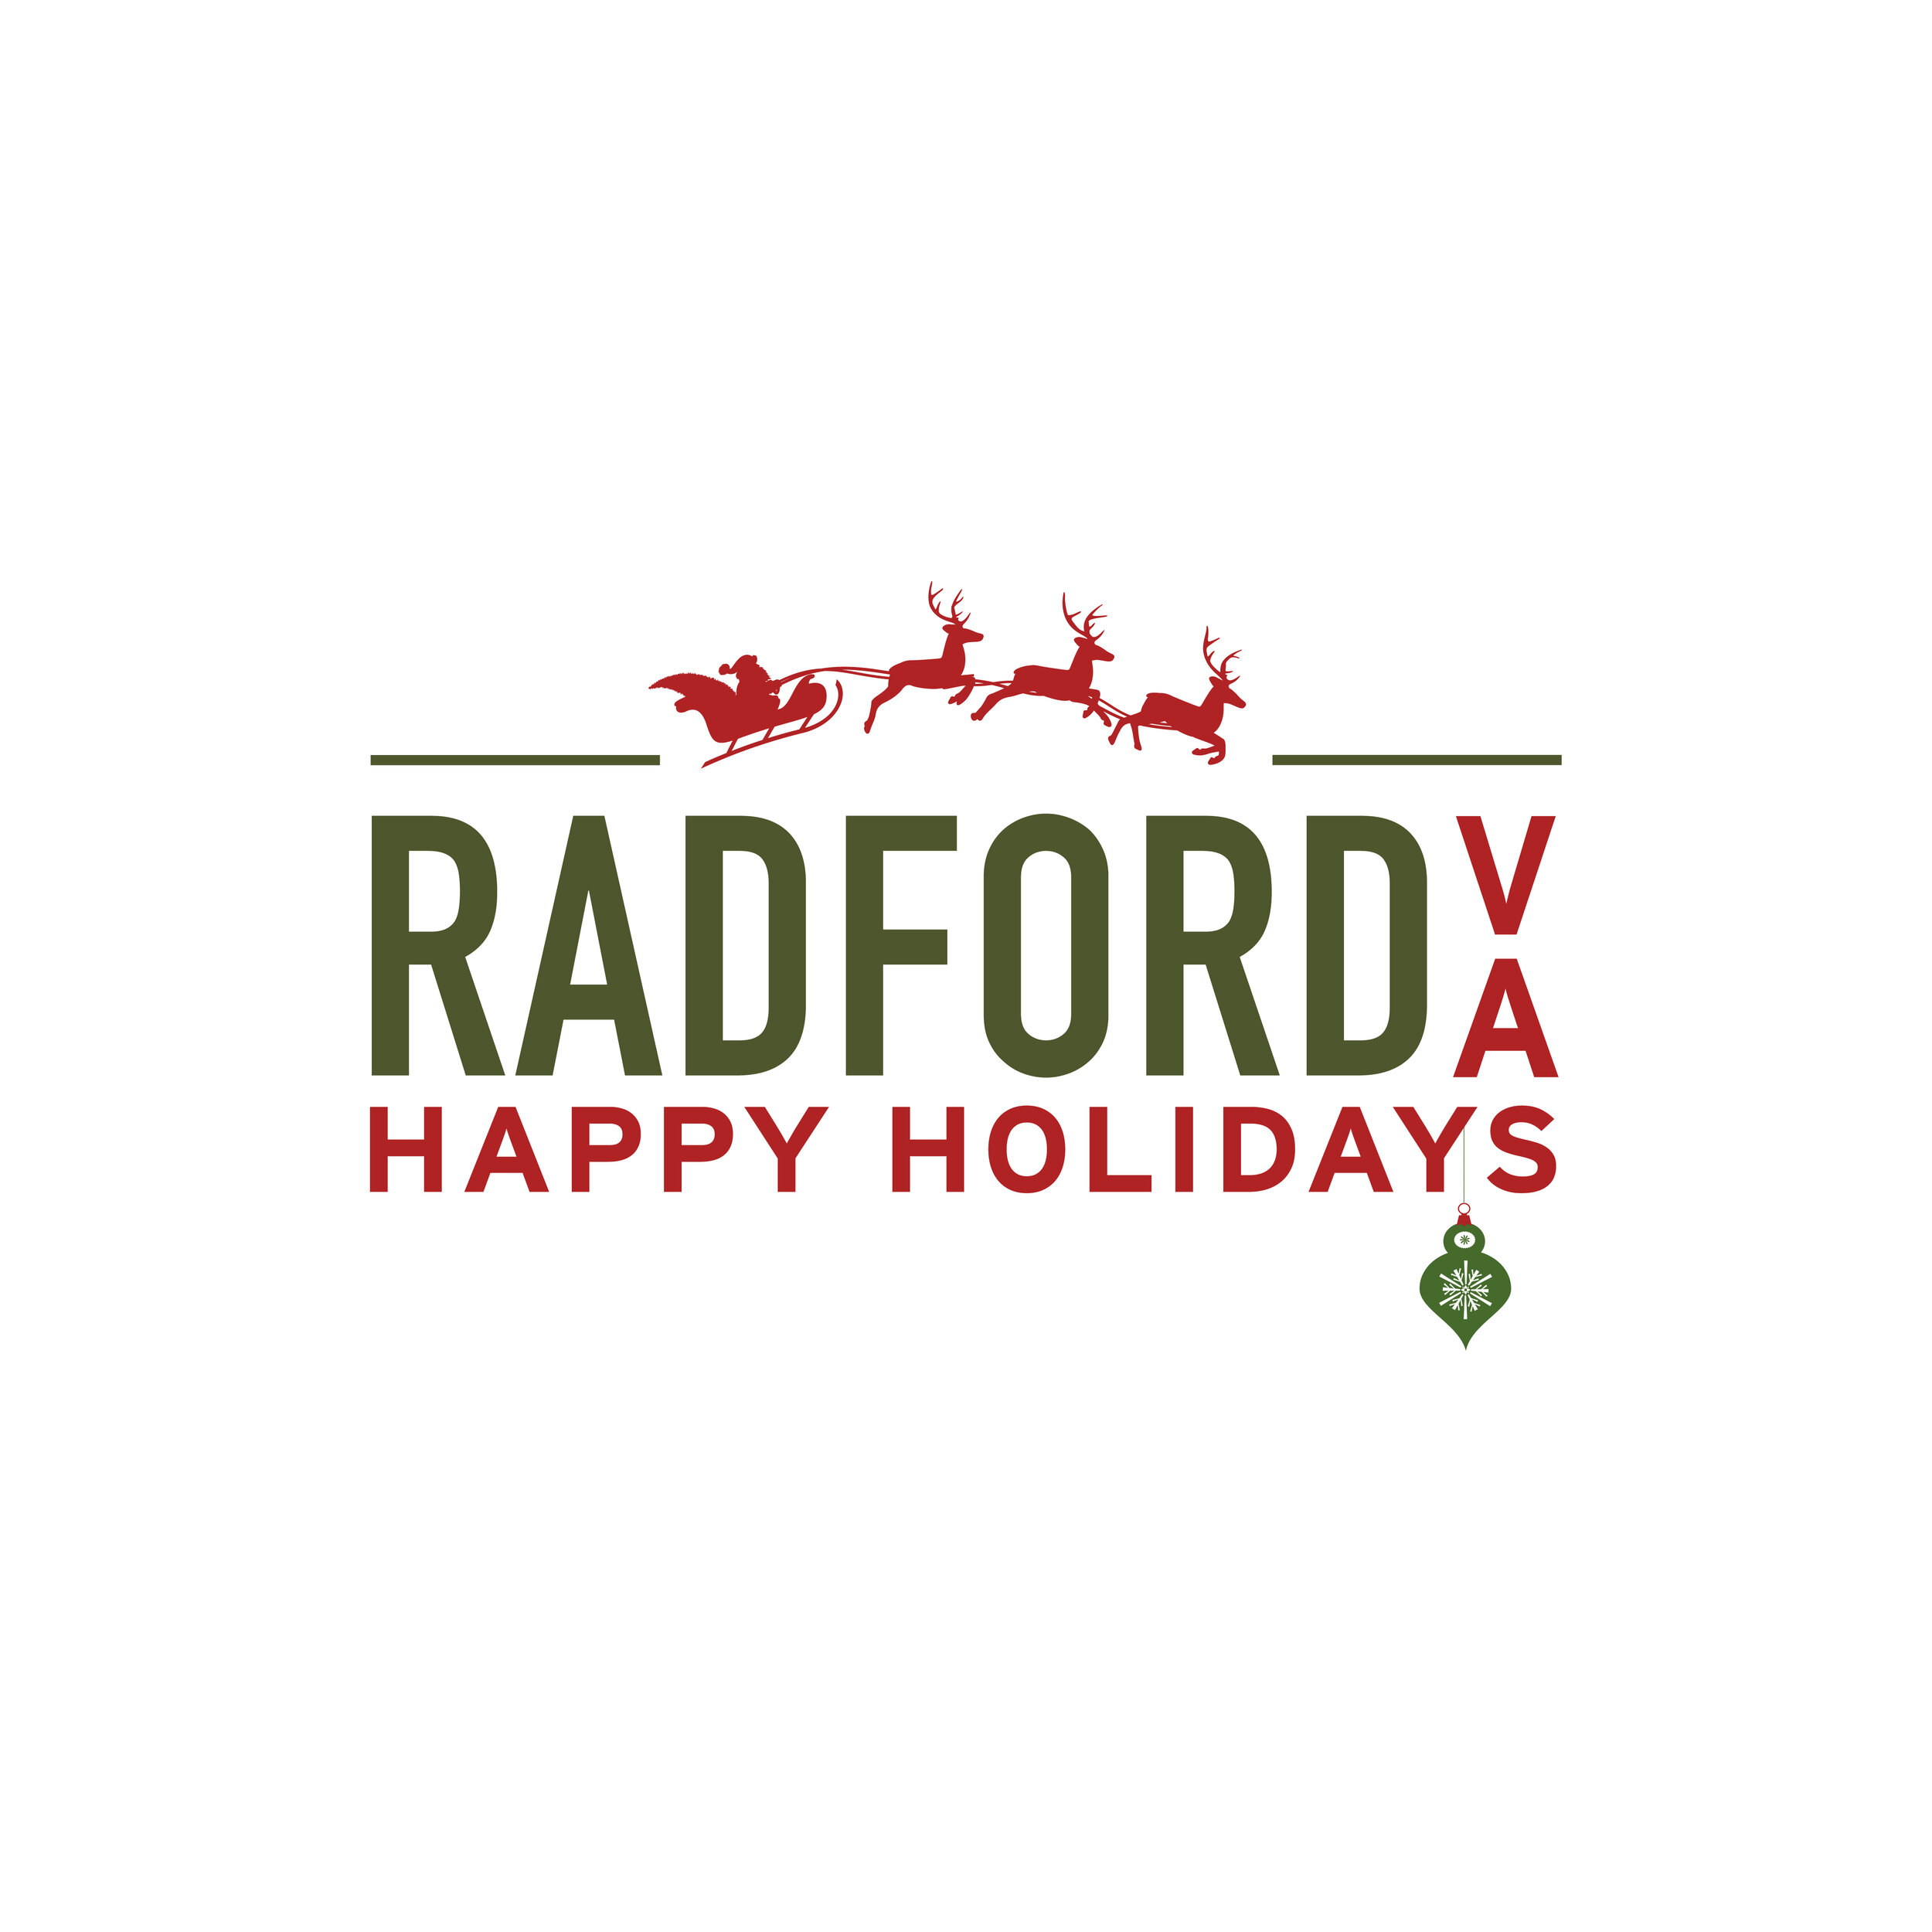 Radford Holiday Social Media.jpg